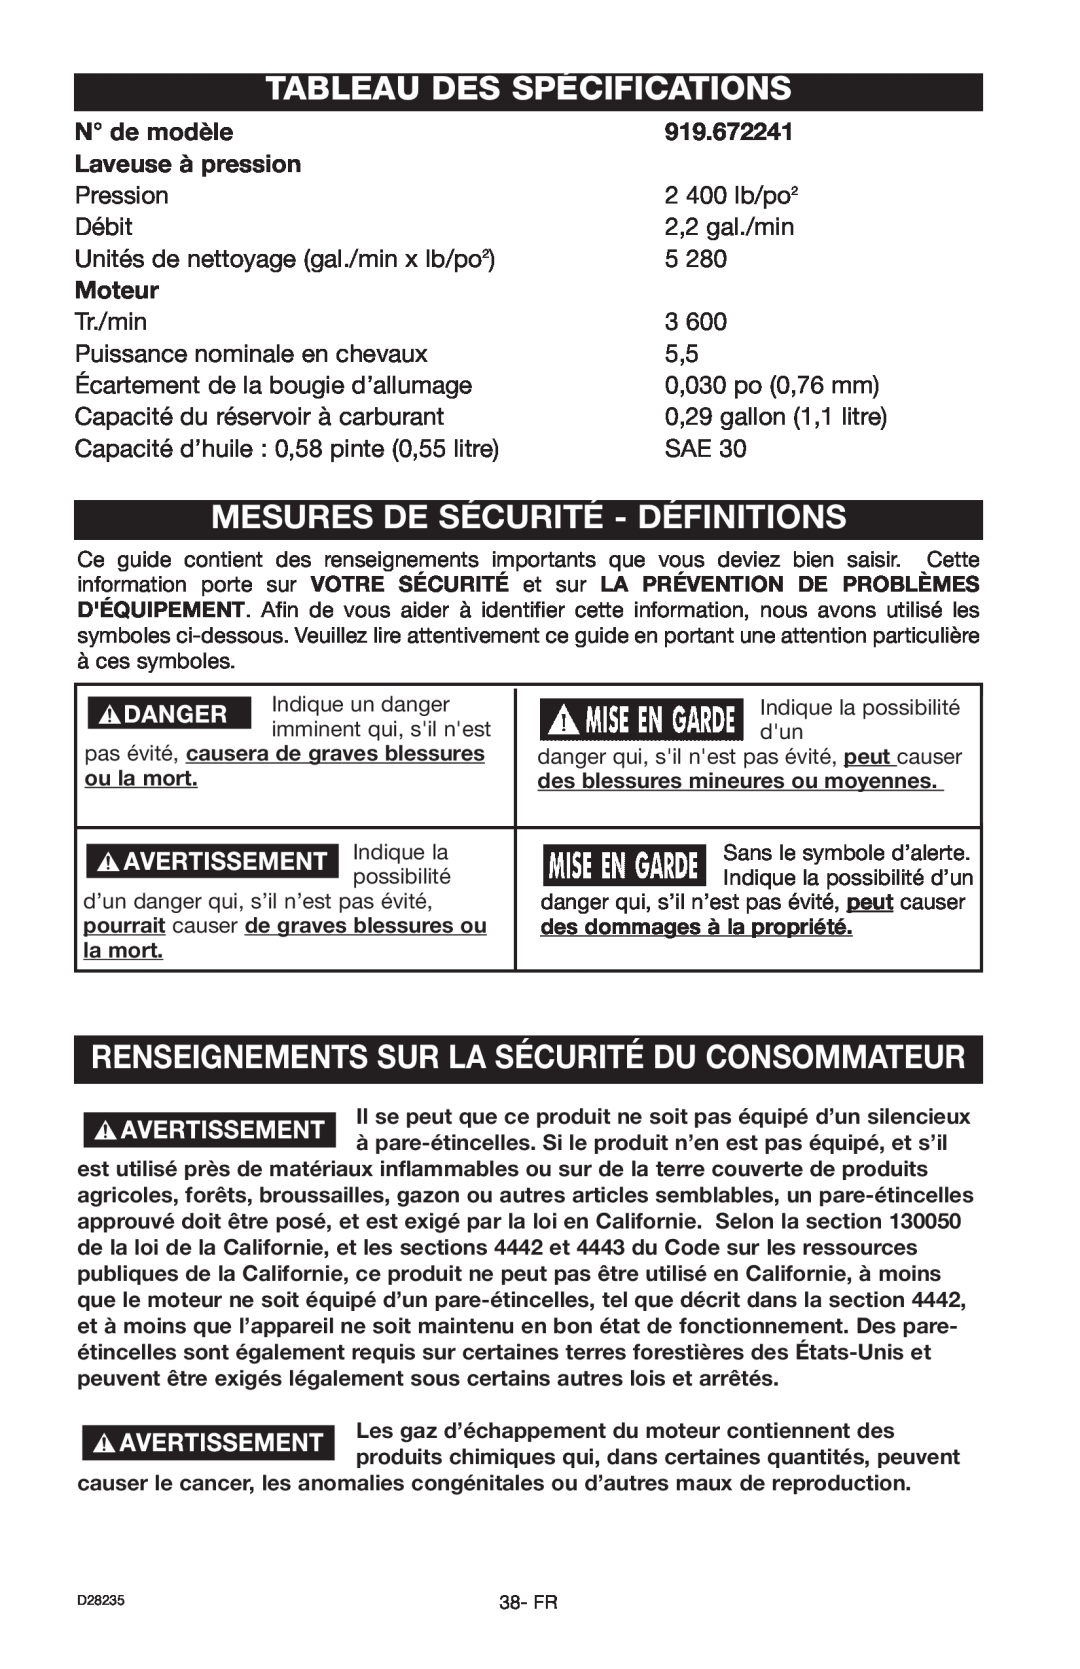 Craftsman D28235 Tableau Des Spécifications, Mesures De Sécurité - Définitions, N de modèle, 919.672241, Moteur 